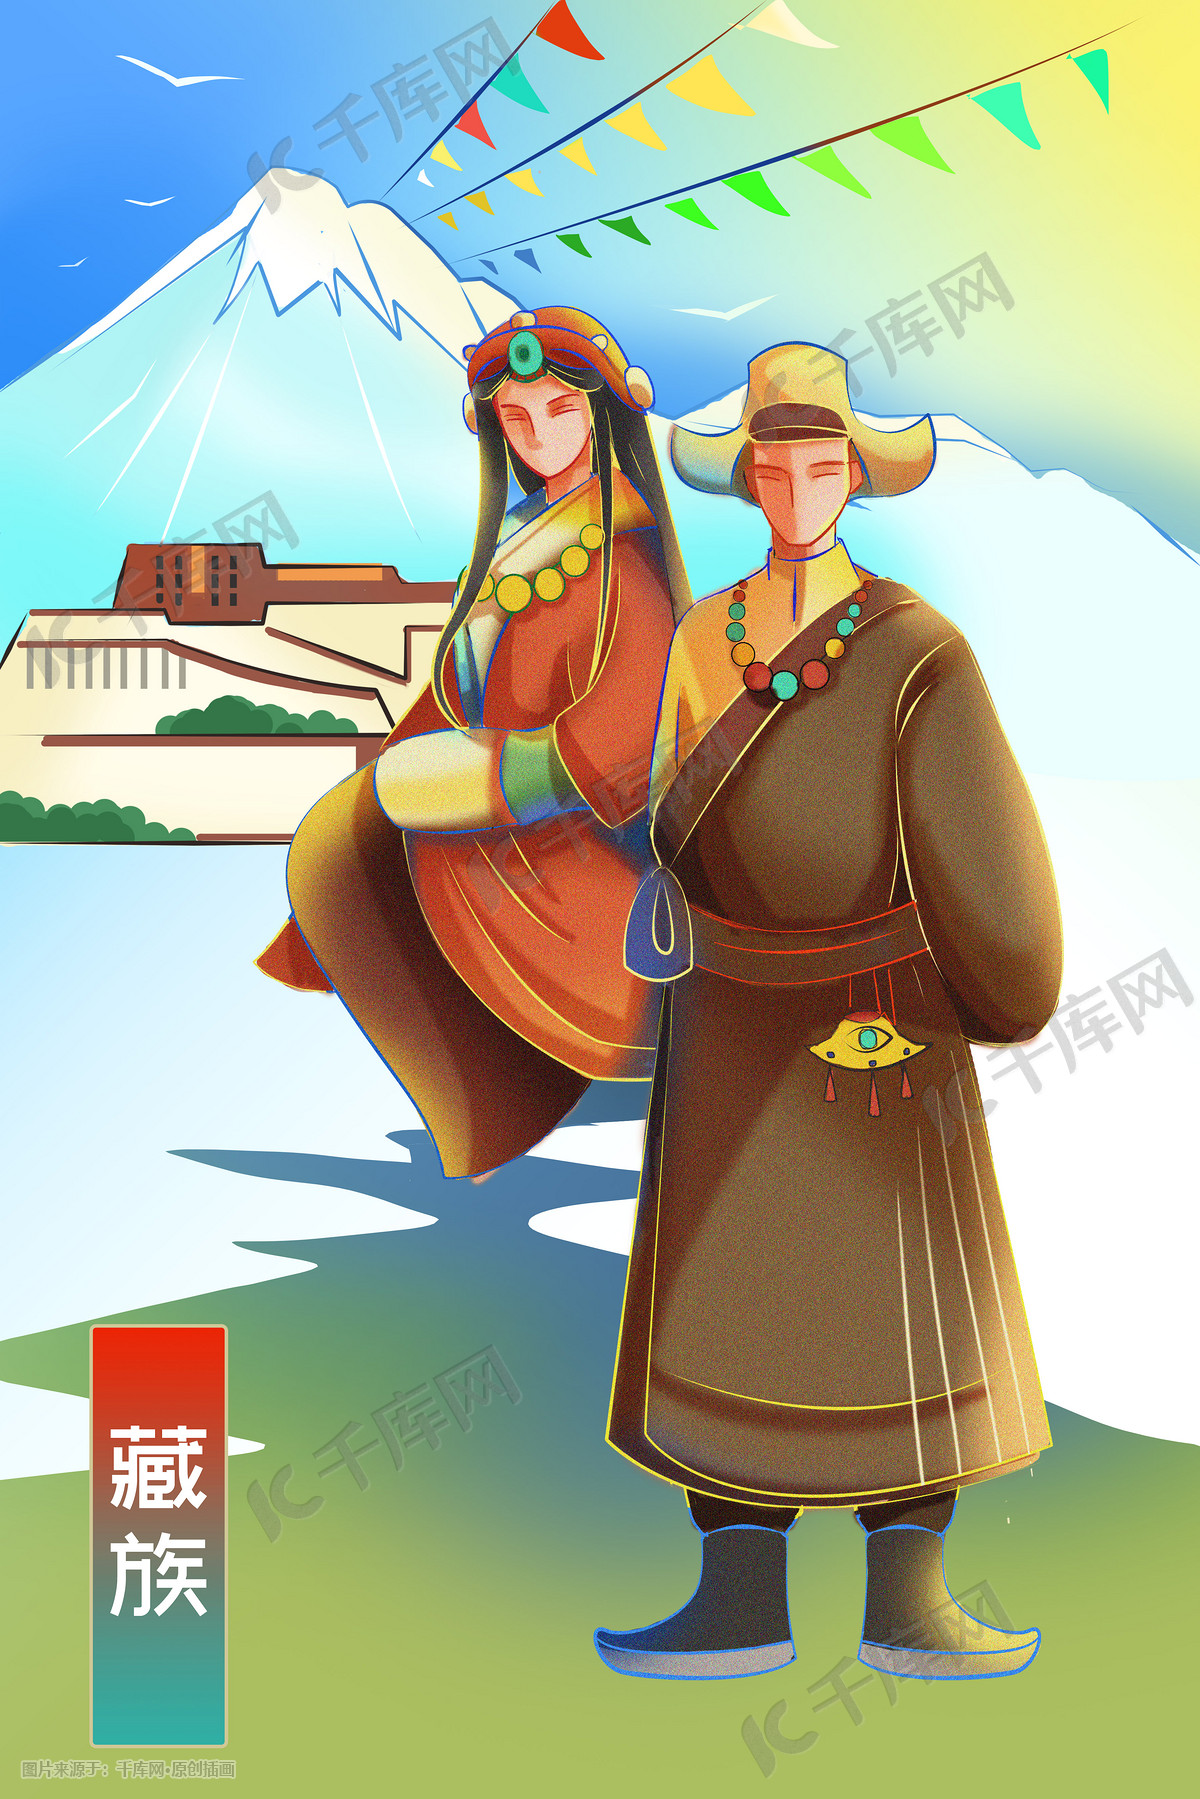 藏族姑娘风格插画设计作品-设计人才灵活用工-设计DNA